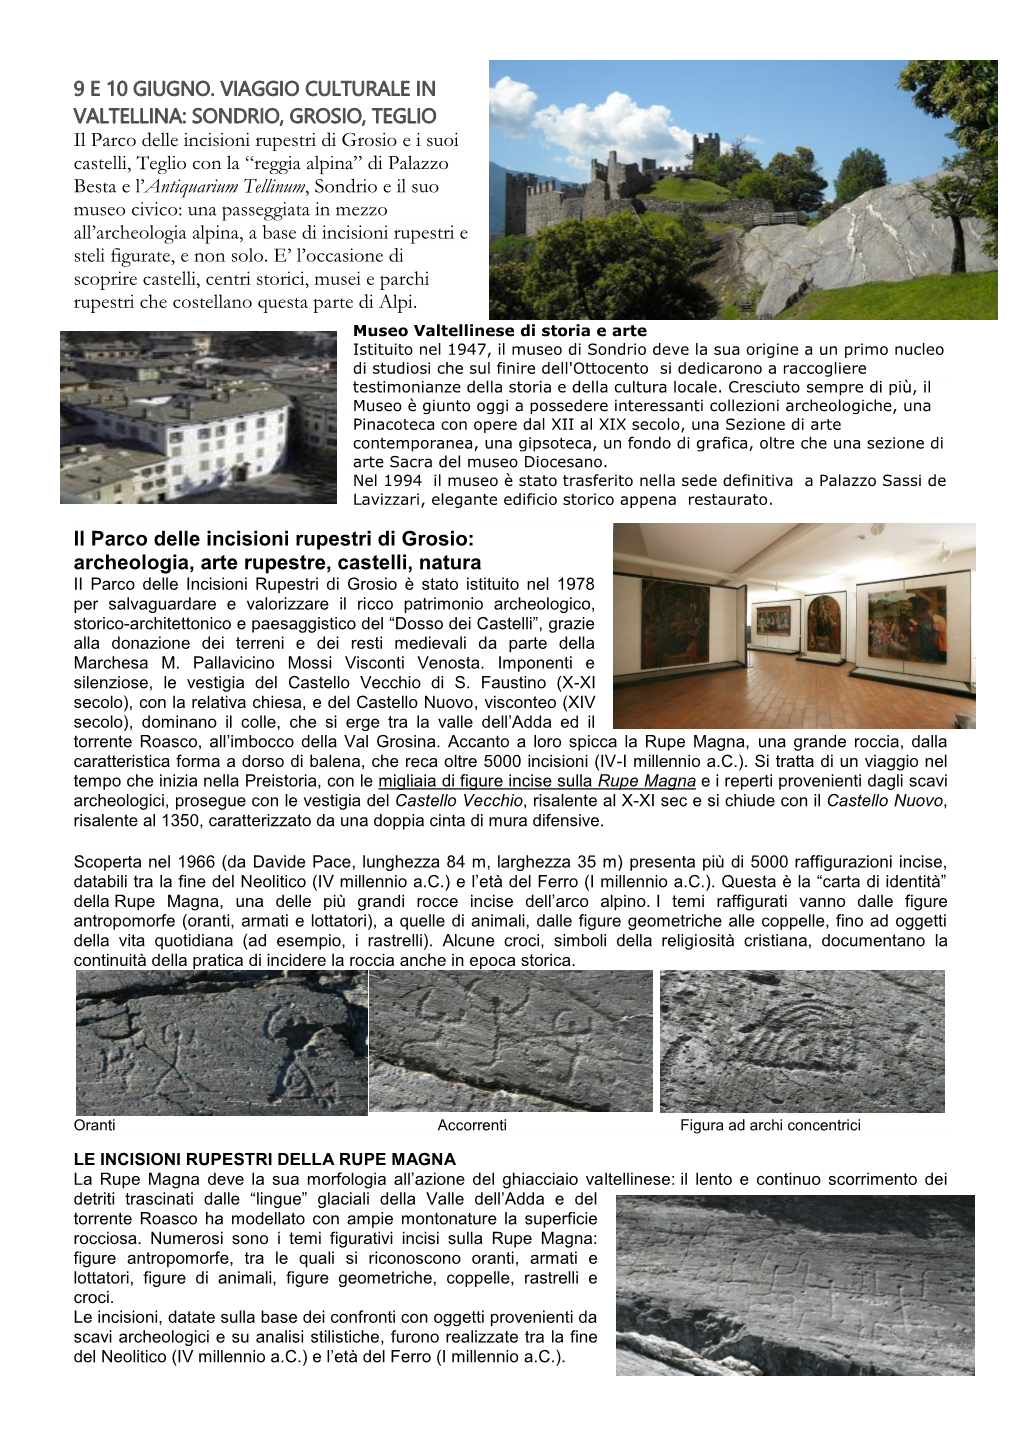 Presentazione Viaggio Culturale in Valtellina a Sondrio, Grosio, Teglio